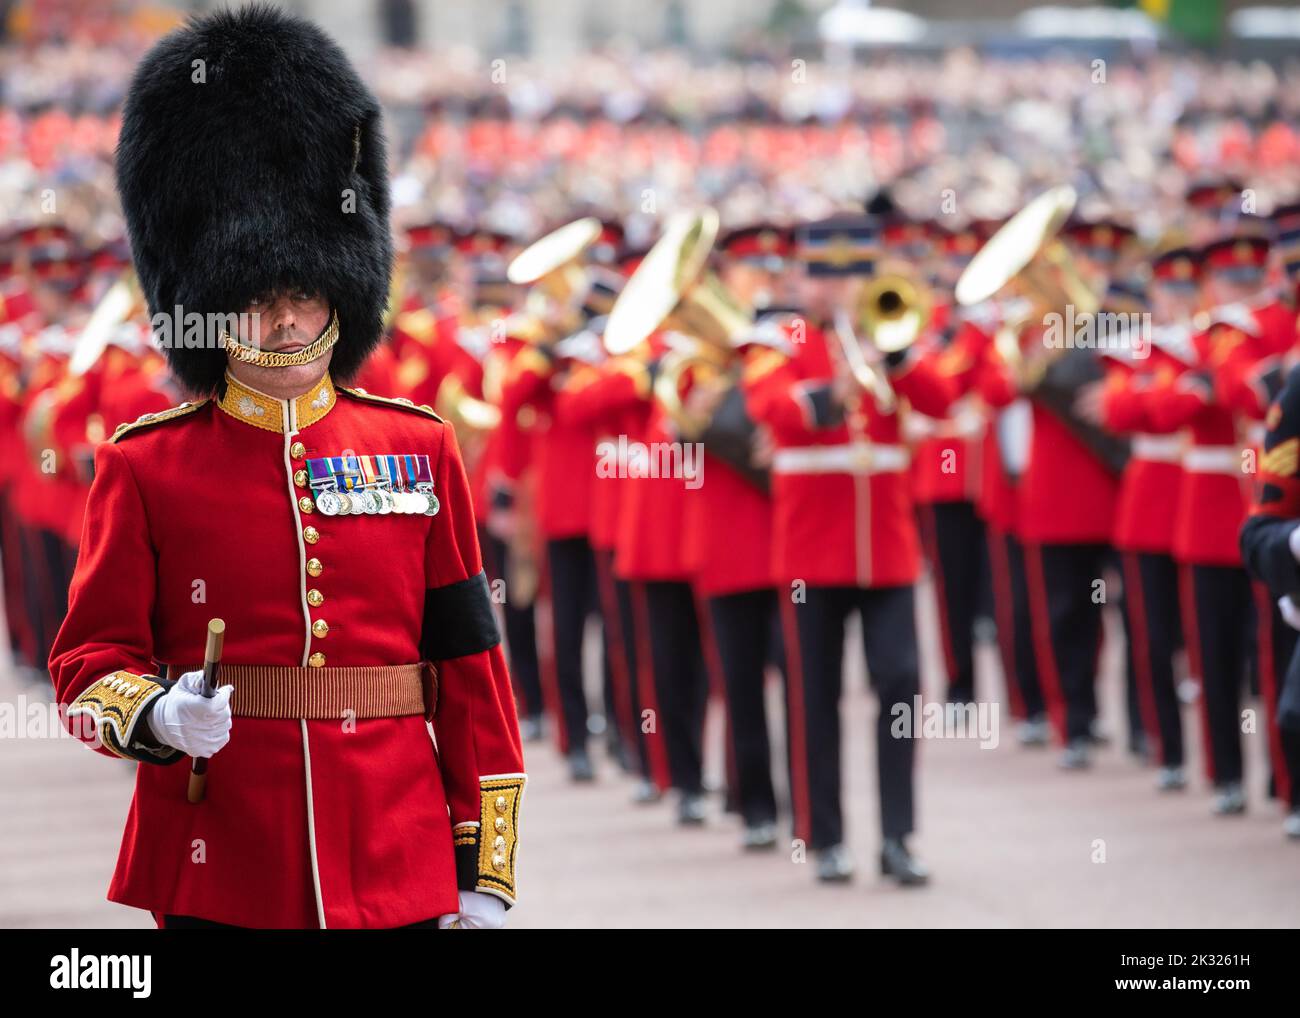 Grand Elizabeth II procession funéraire à Londres, 22 septembre 2022, Angleterre, Royaume-Uni Banque D'Images